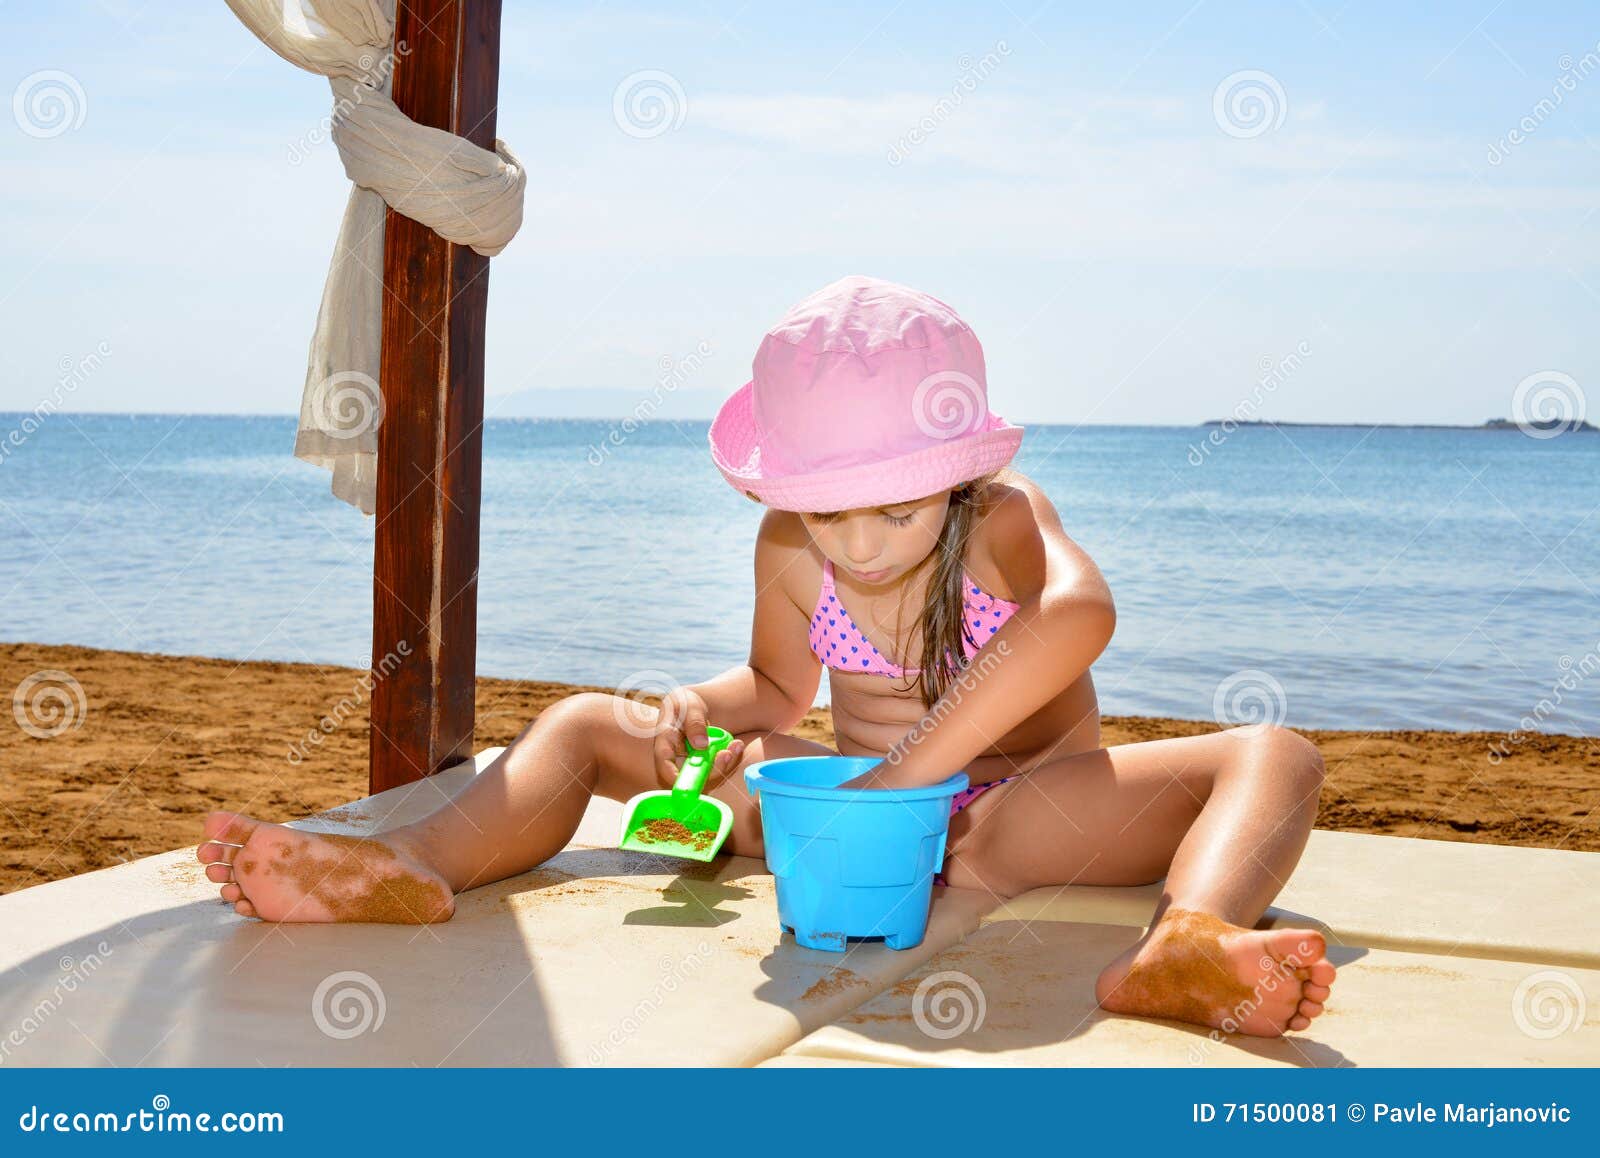 фото дети на голом пляже фото 115